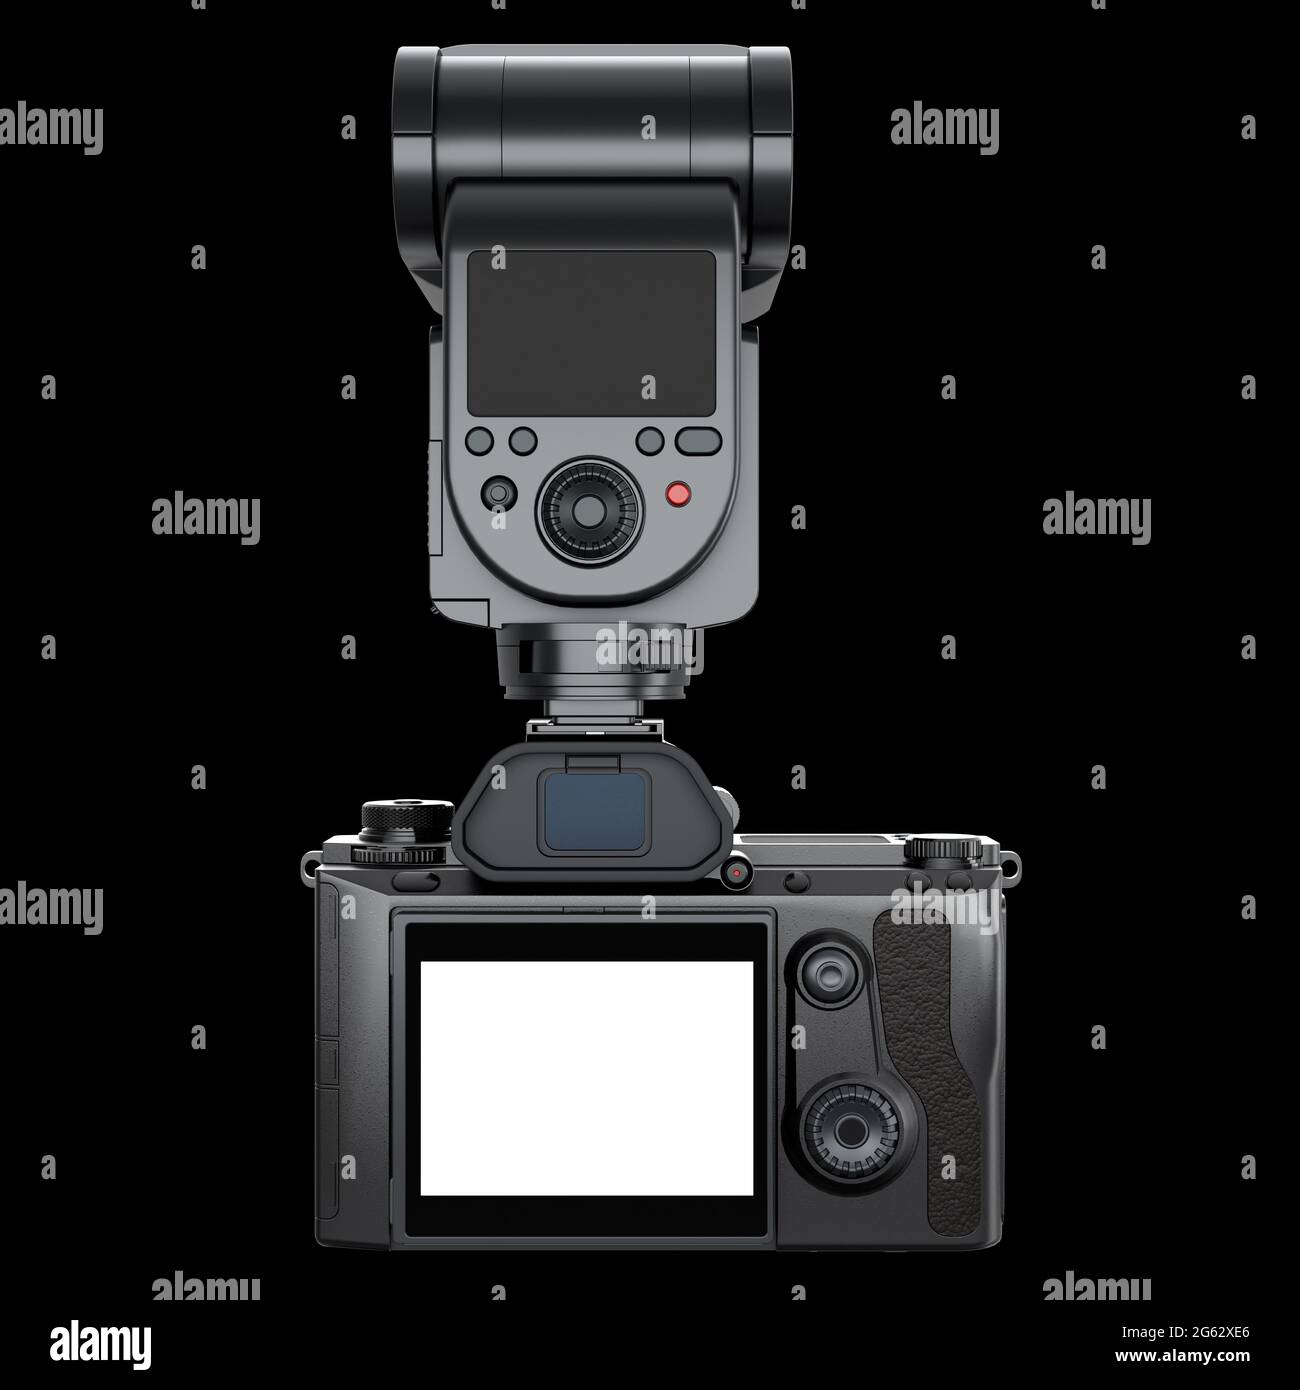 Concetto di fotocamera reflex digitale inesistente con obiettivo e flash esterno speedlight isolato su sfondo nero. Rendering 3D e illustrazione di professionisti Foto Stock